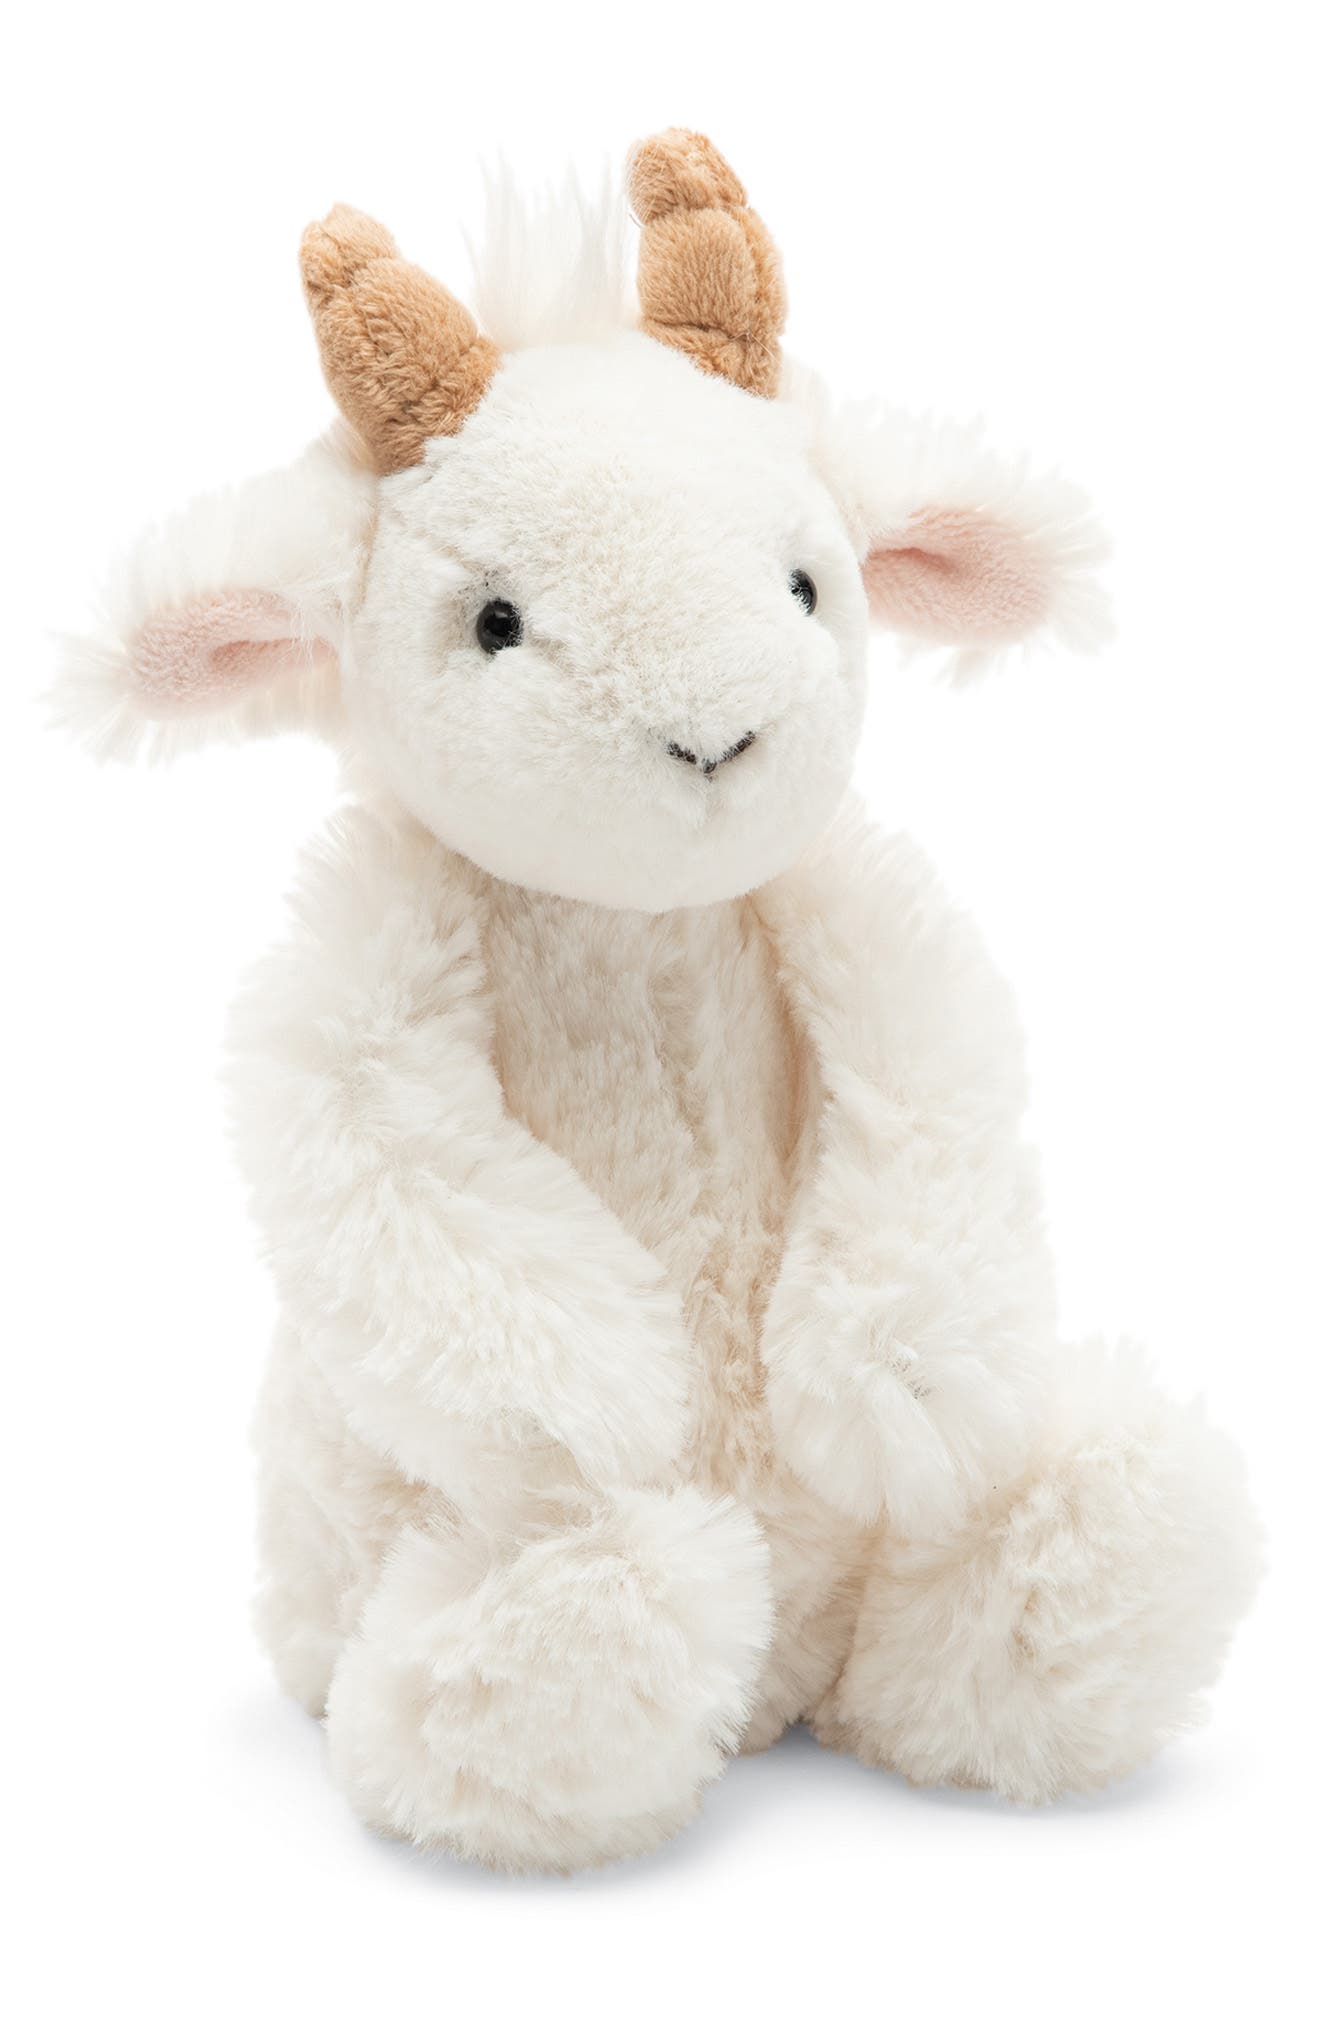 baby goat stuffed animal